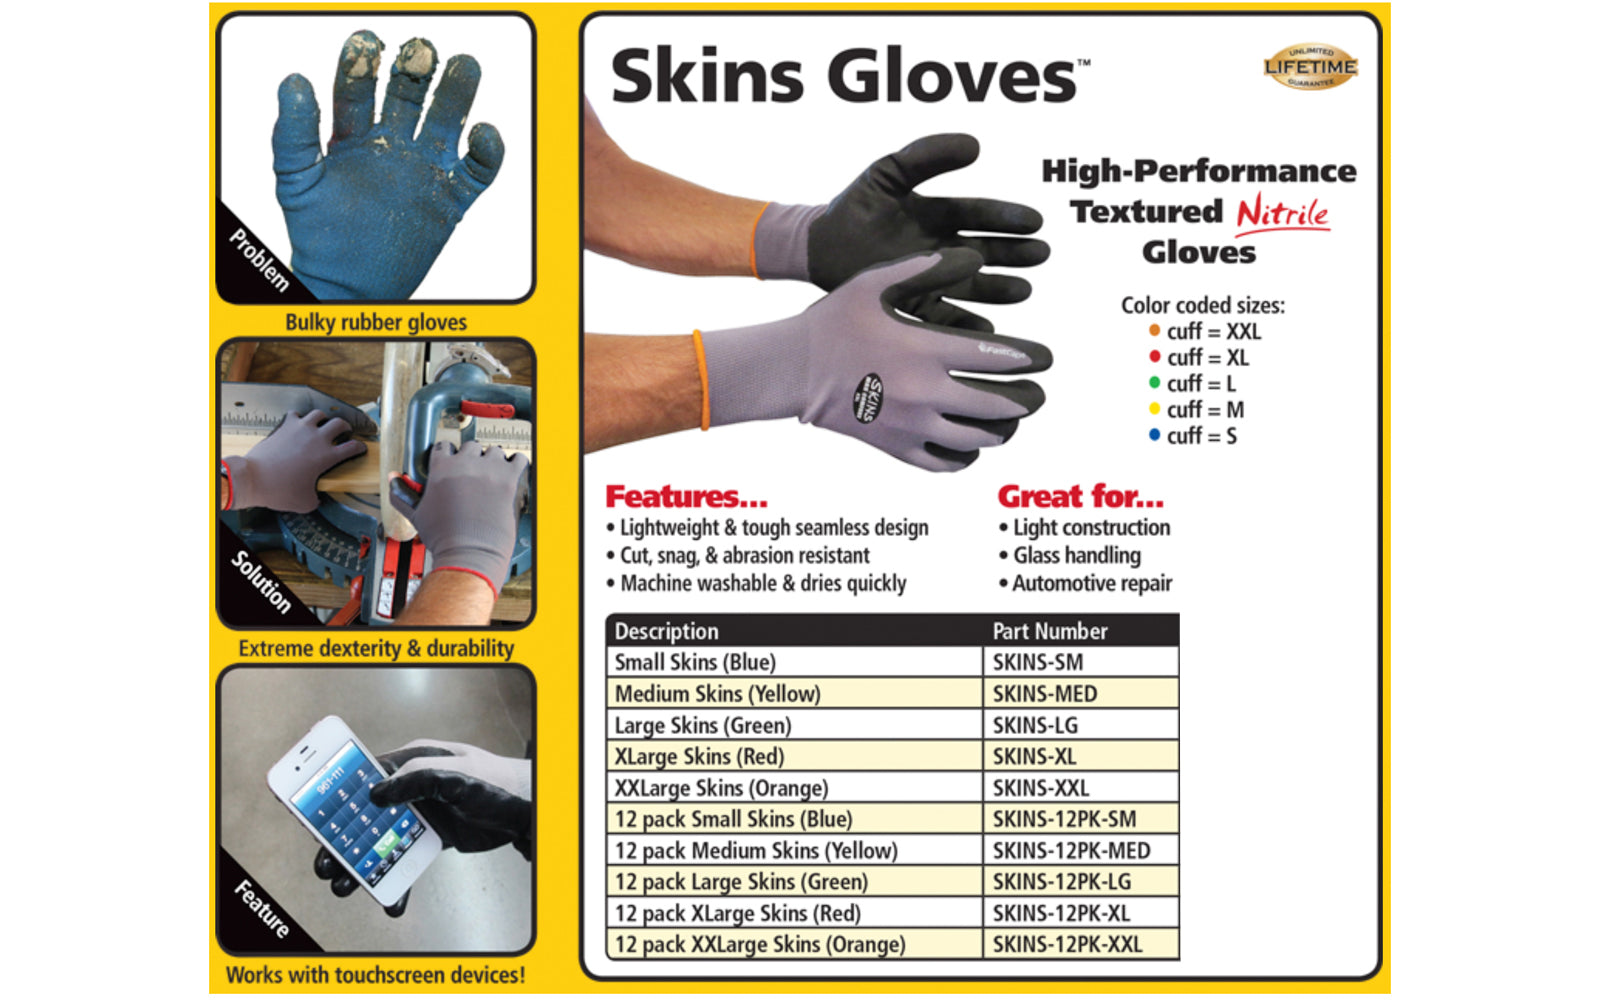 https://hardwickandsons.com/cdn/shop/products/Final_FC_Skins_Gloves_6.jpg?v=1557610938&width=1946